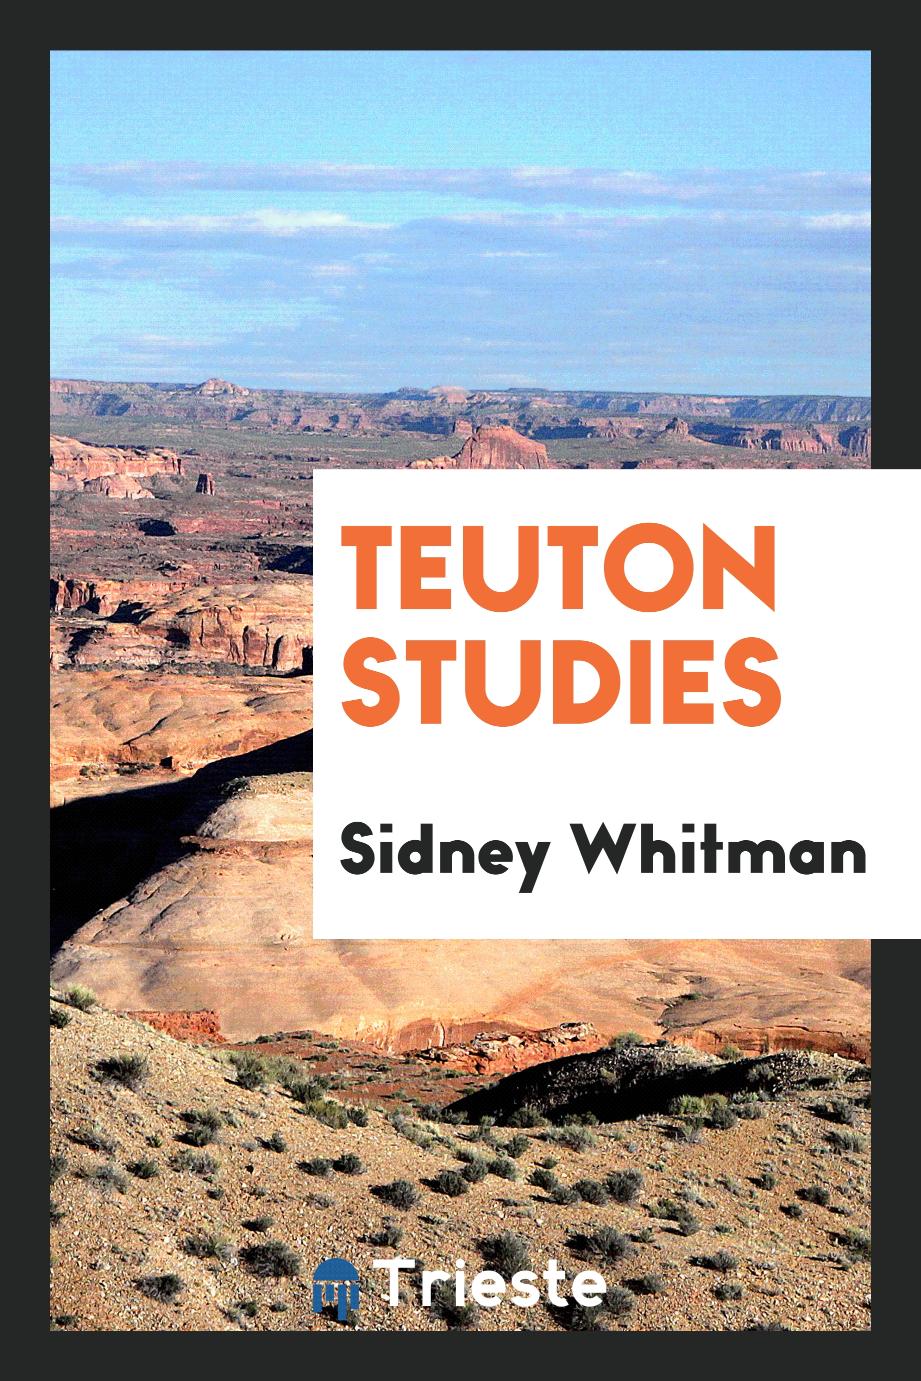 Teuton studies